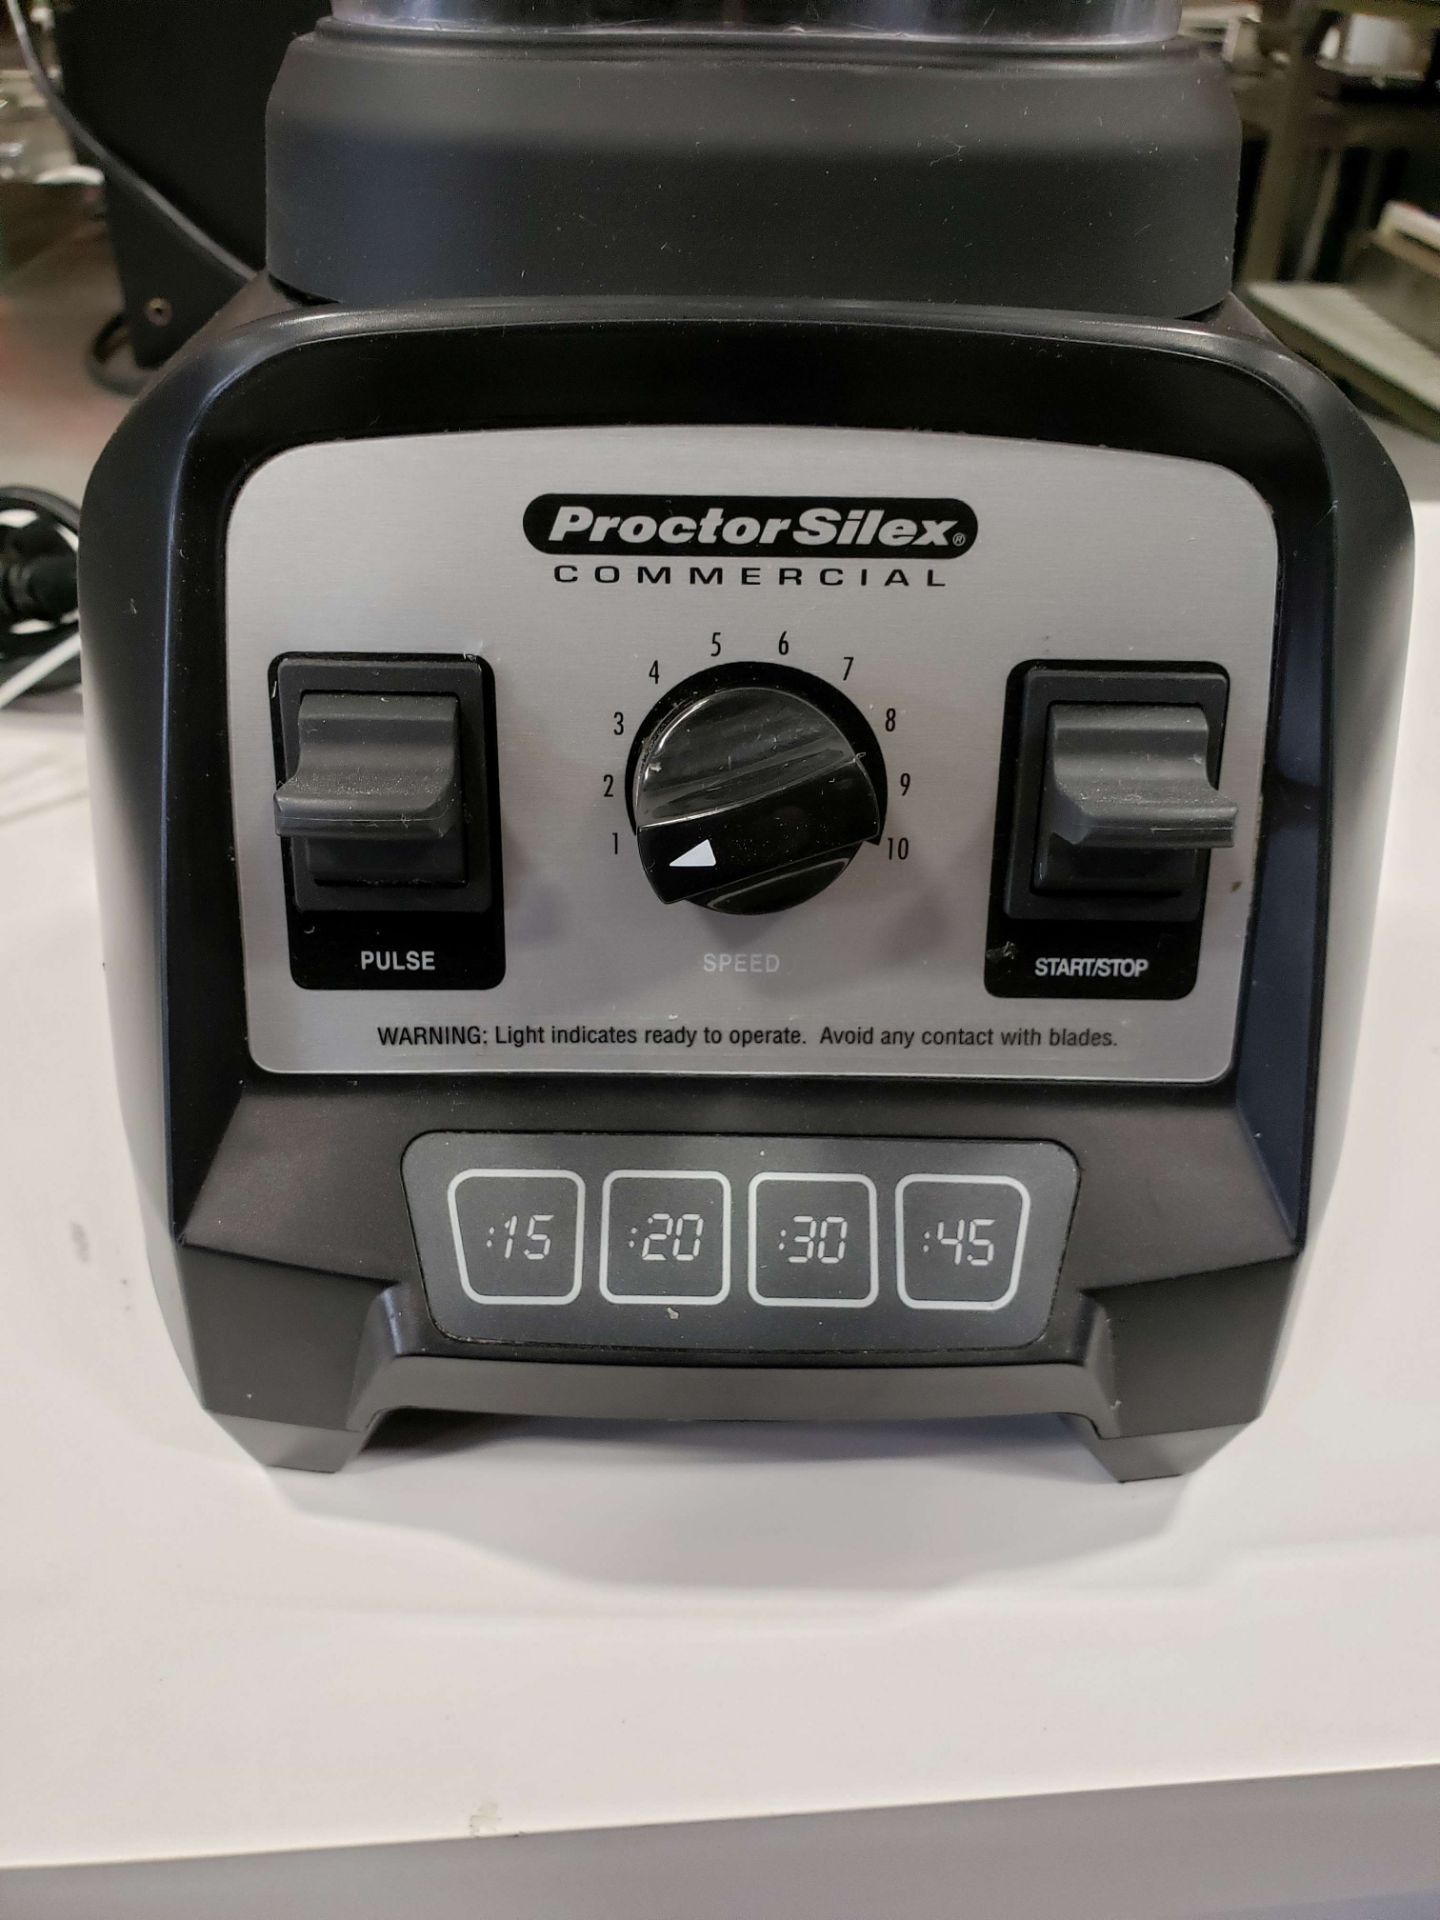 Proctor Silex Commercial Blender - Model 55000 - Image 2 of 3